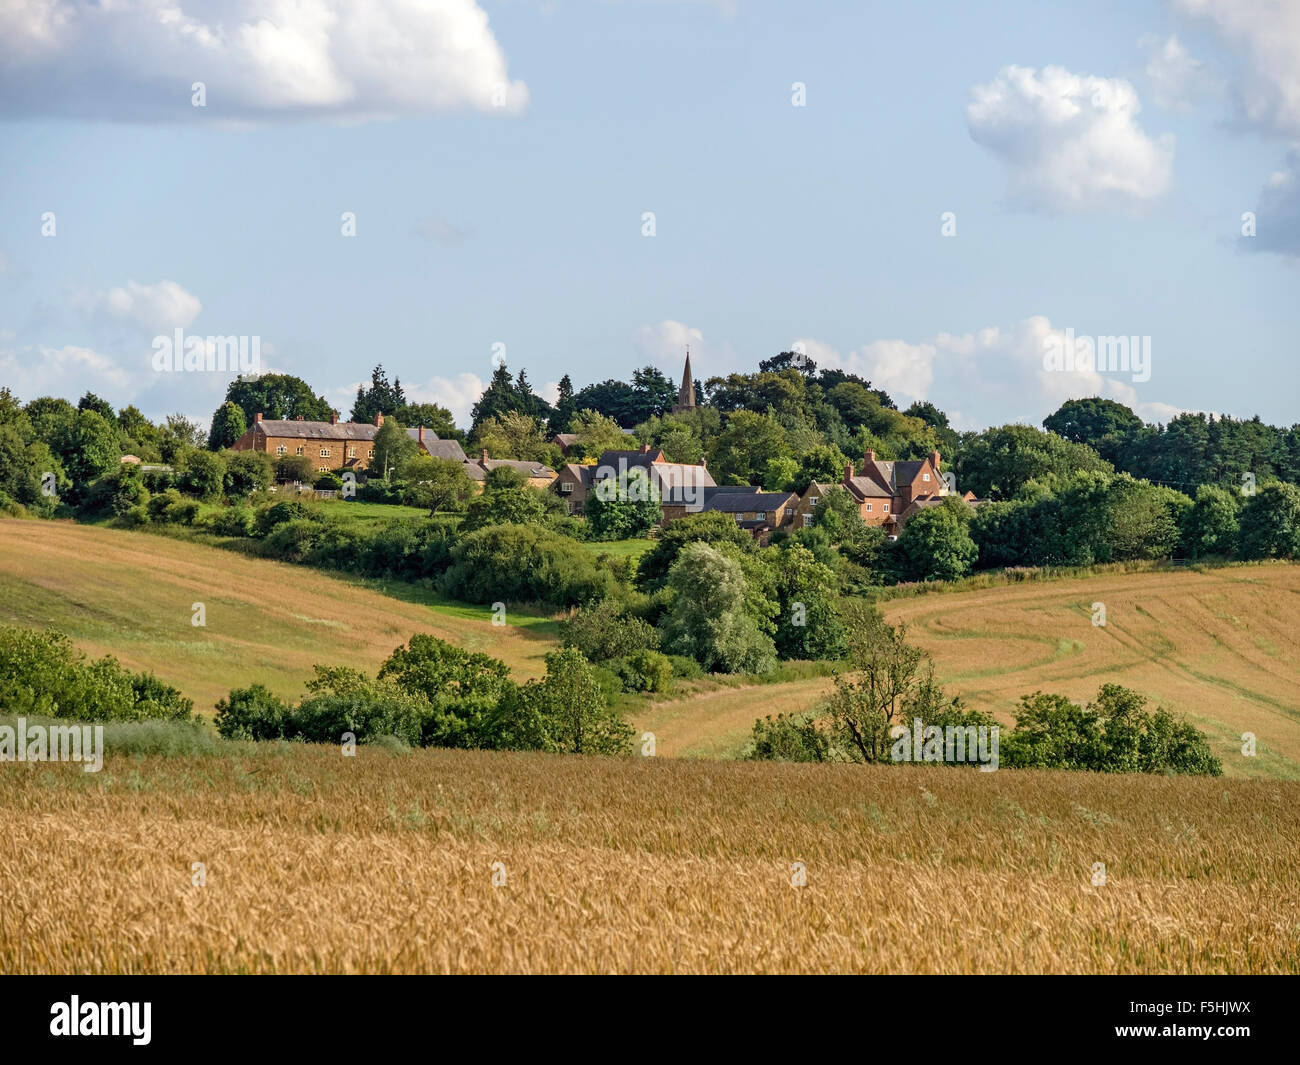 La aldea de la cima de la colina de Leicestershire Burrough-on-the-Hill, visto a través de los campos. Foto de stock